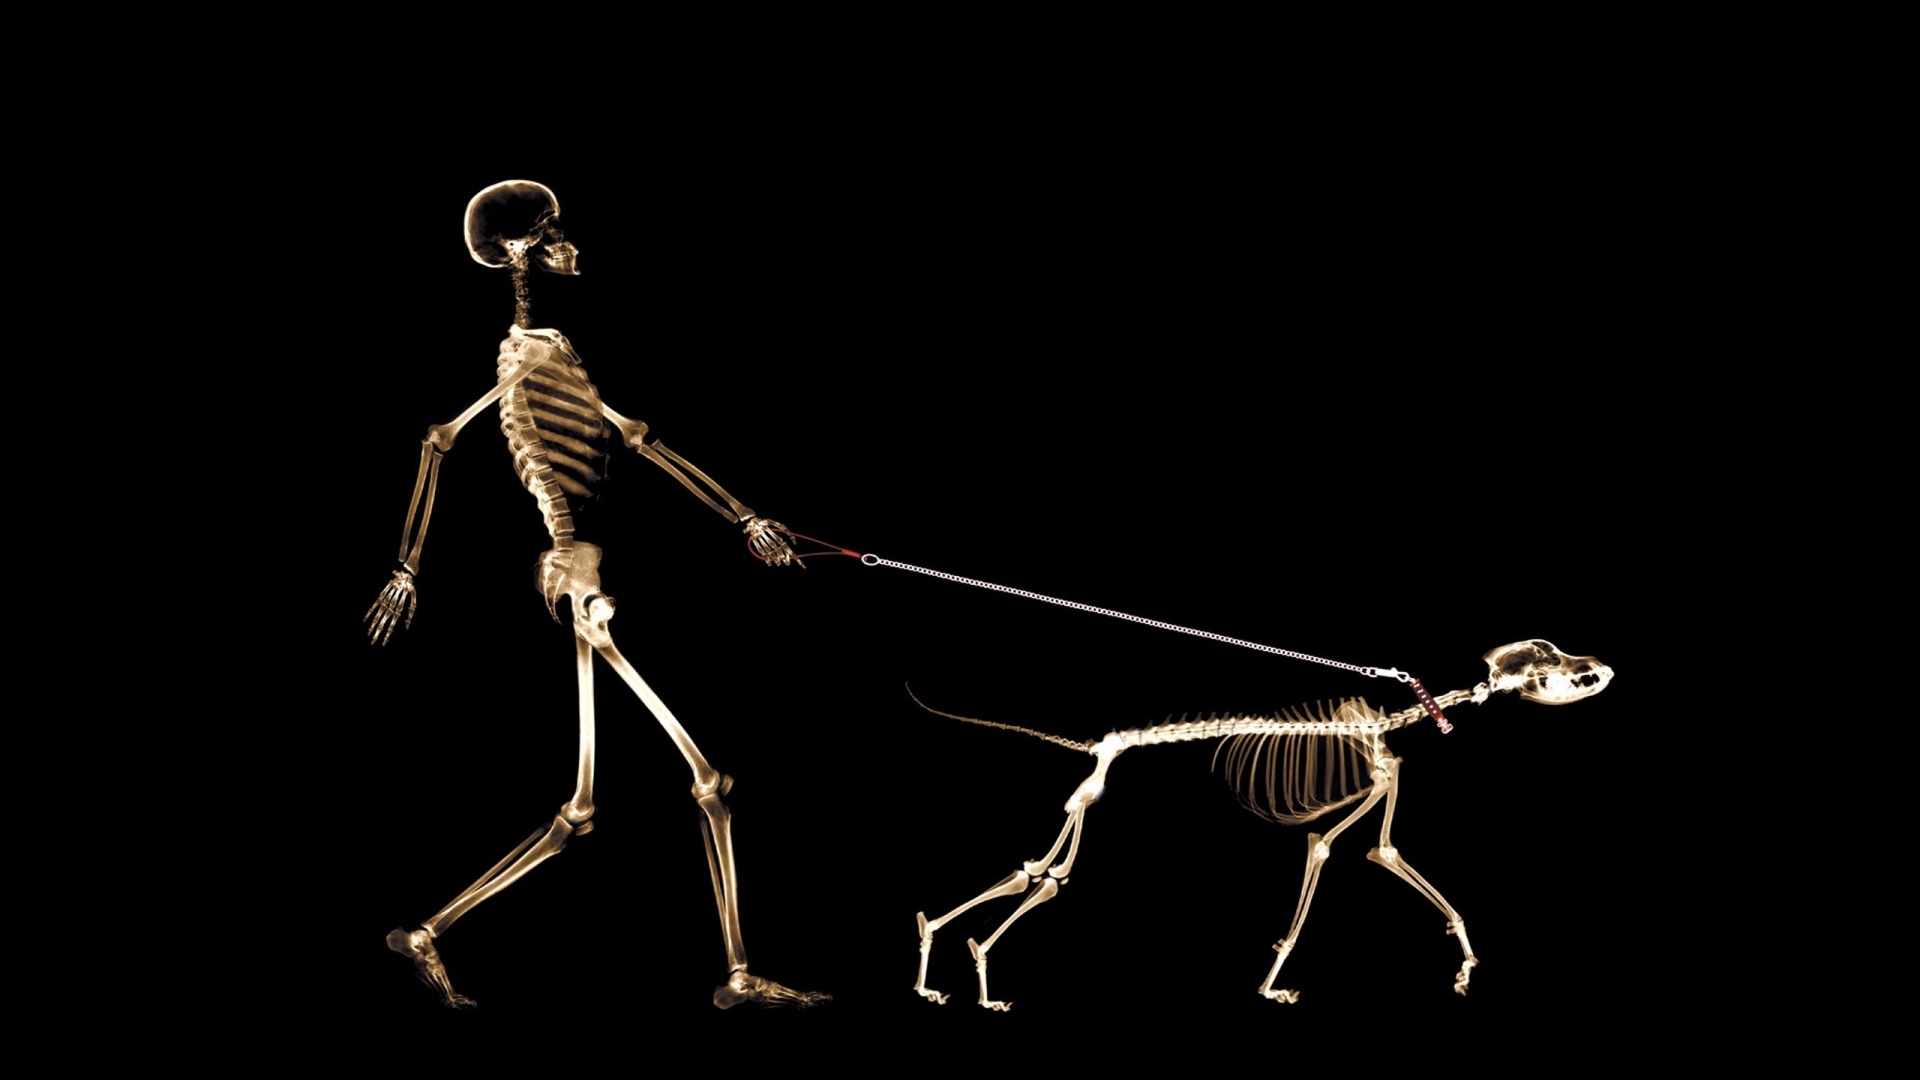 Skeletons Walking for 1920 x 1080 HDTV 1080p resolution